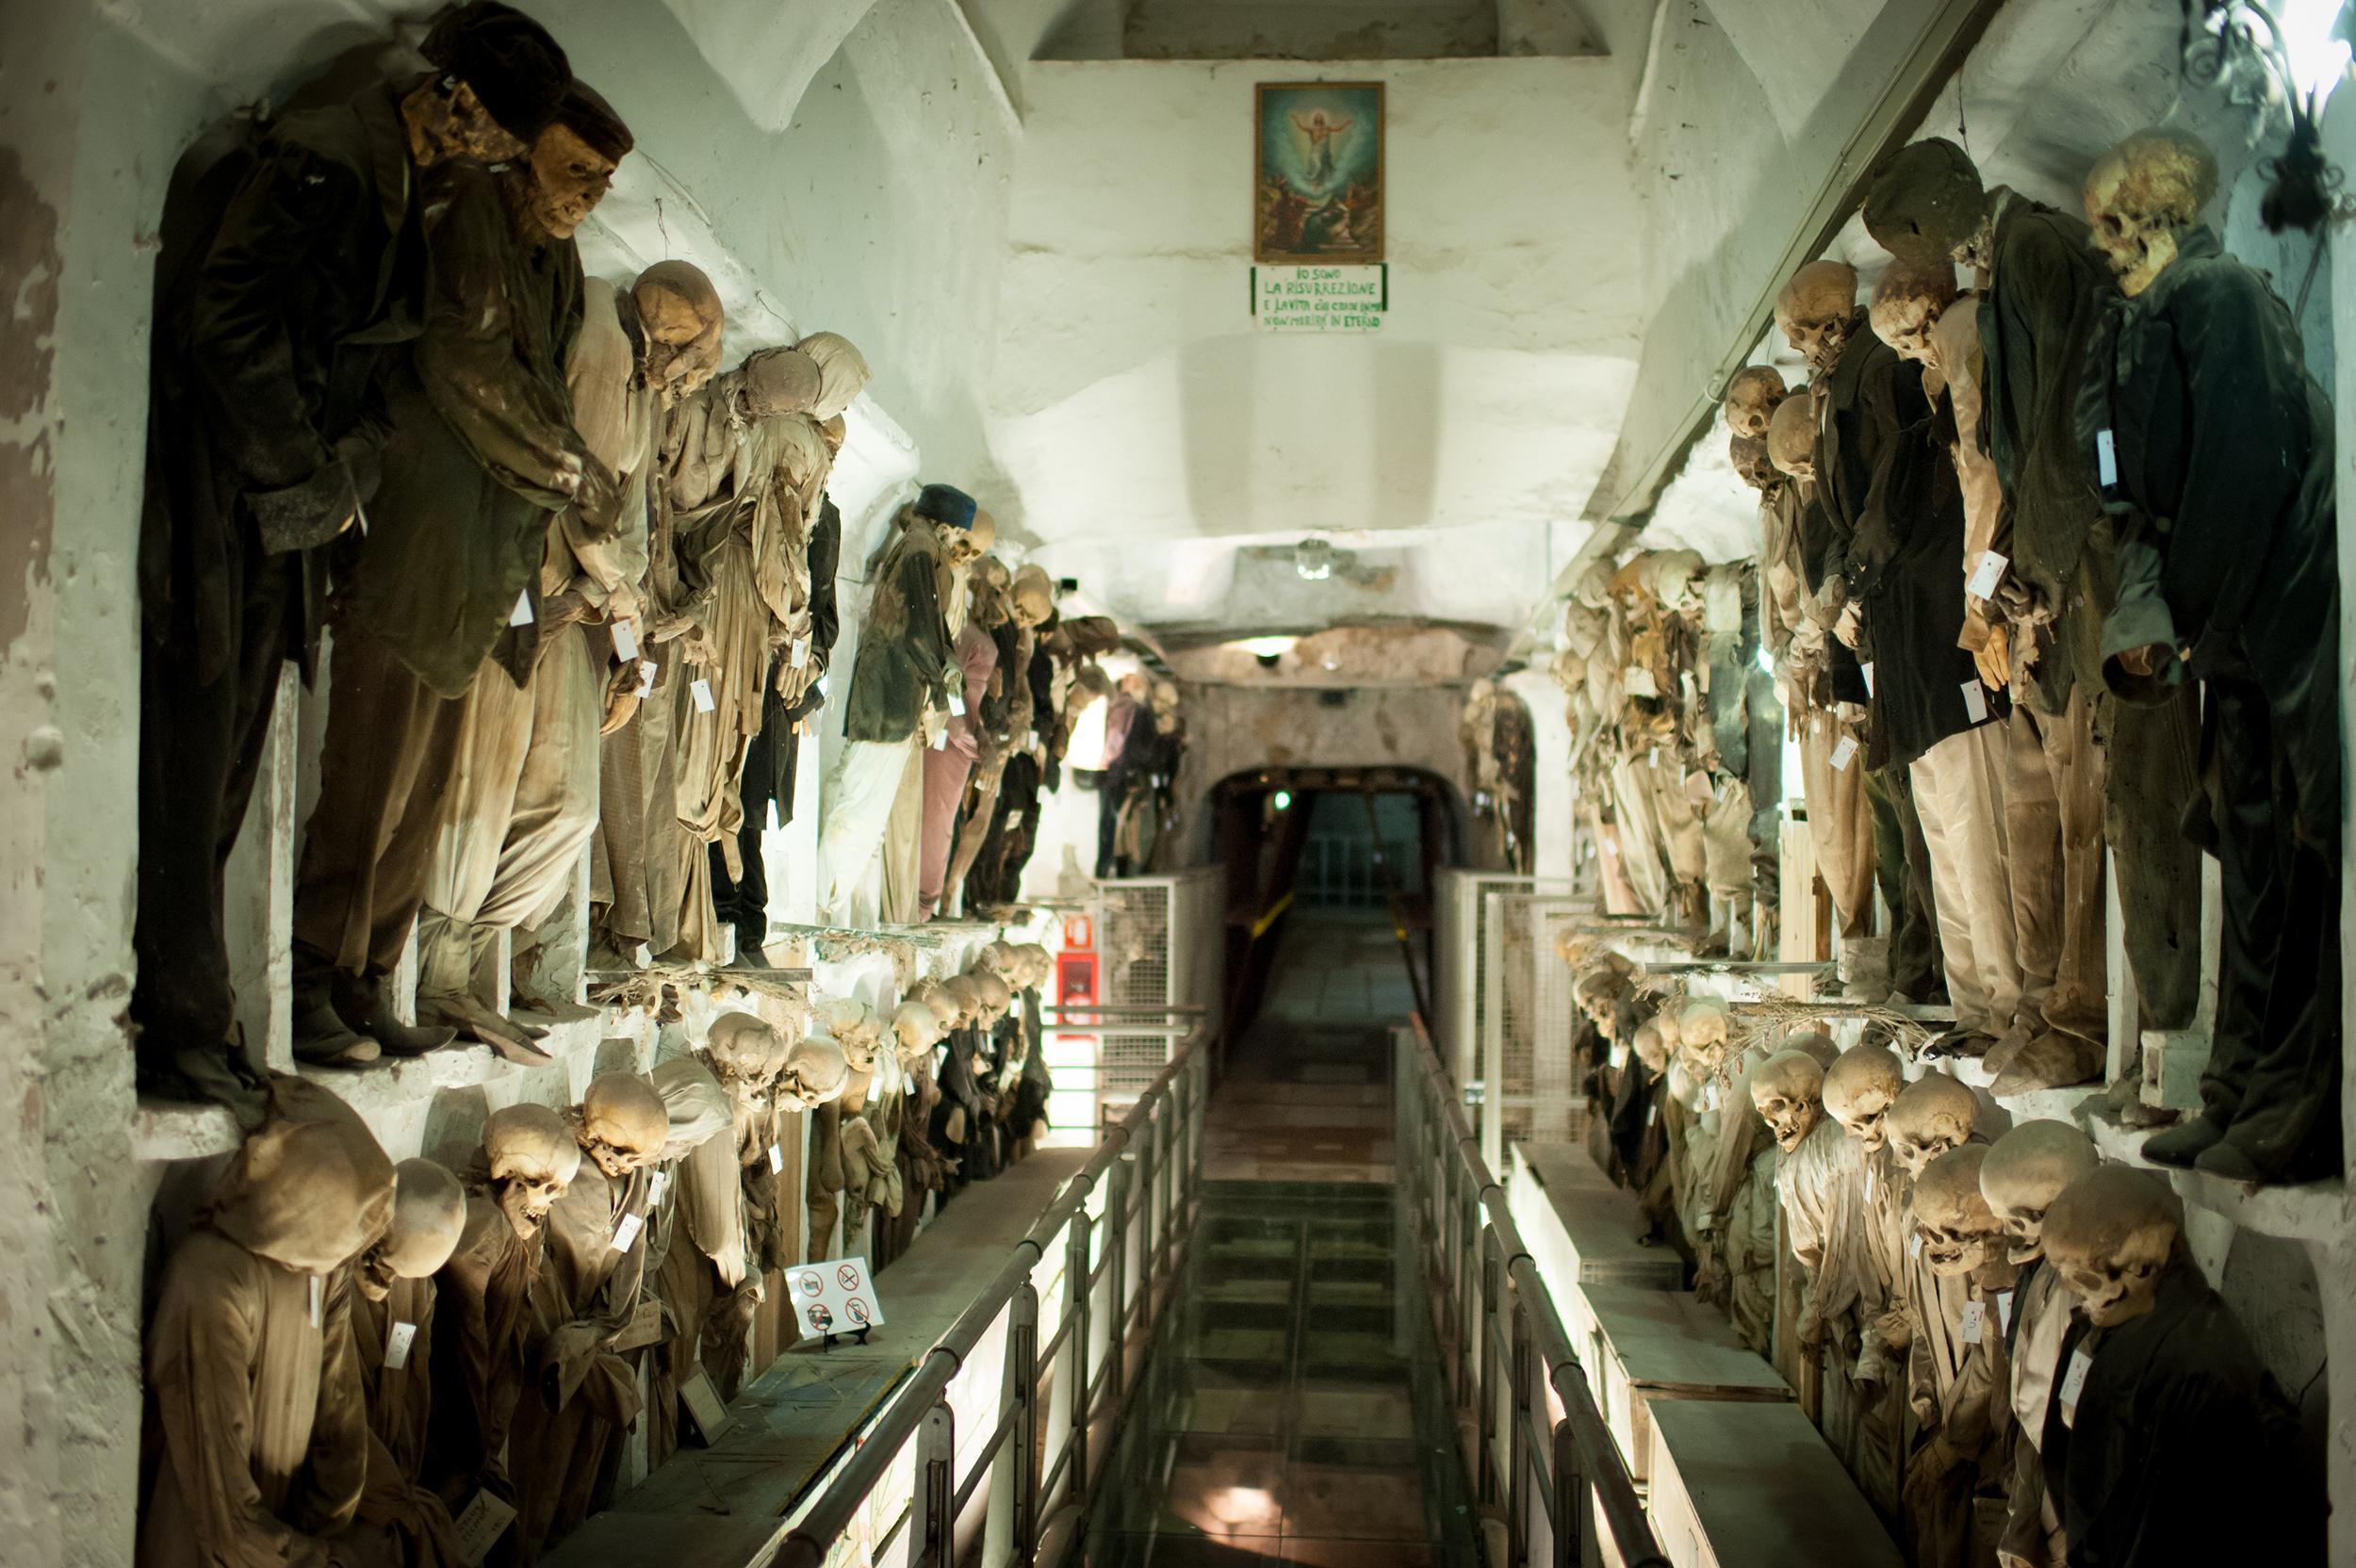 Capuchin Yeraltı Mezarlarındaki çocuk mumyaların sırrı çözülecek